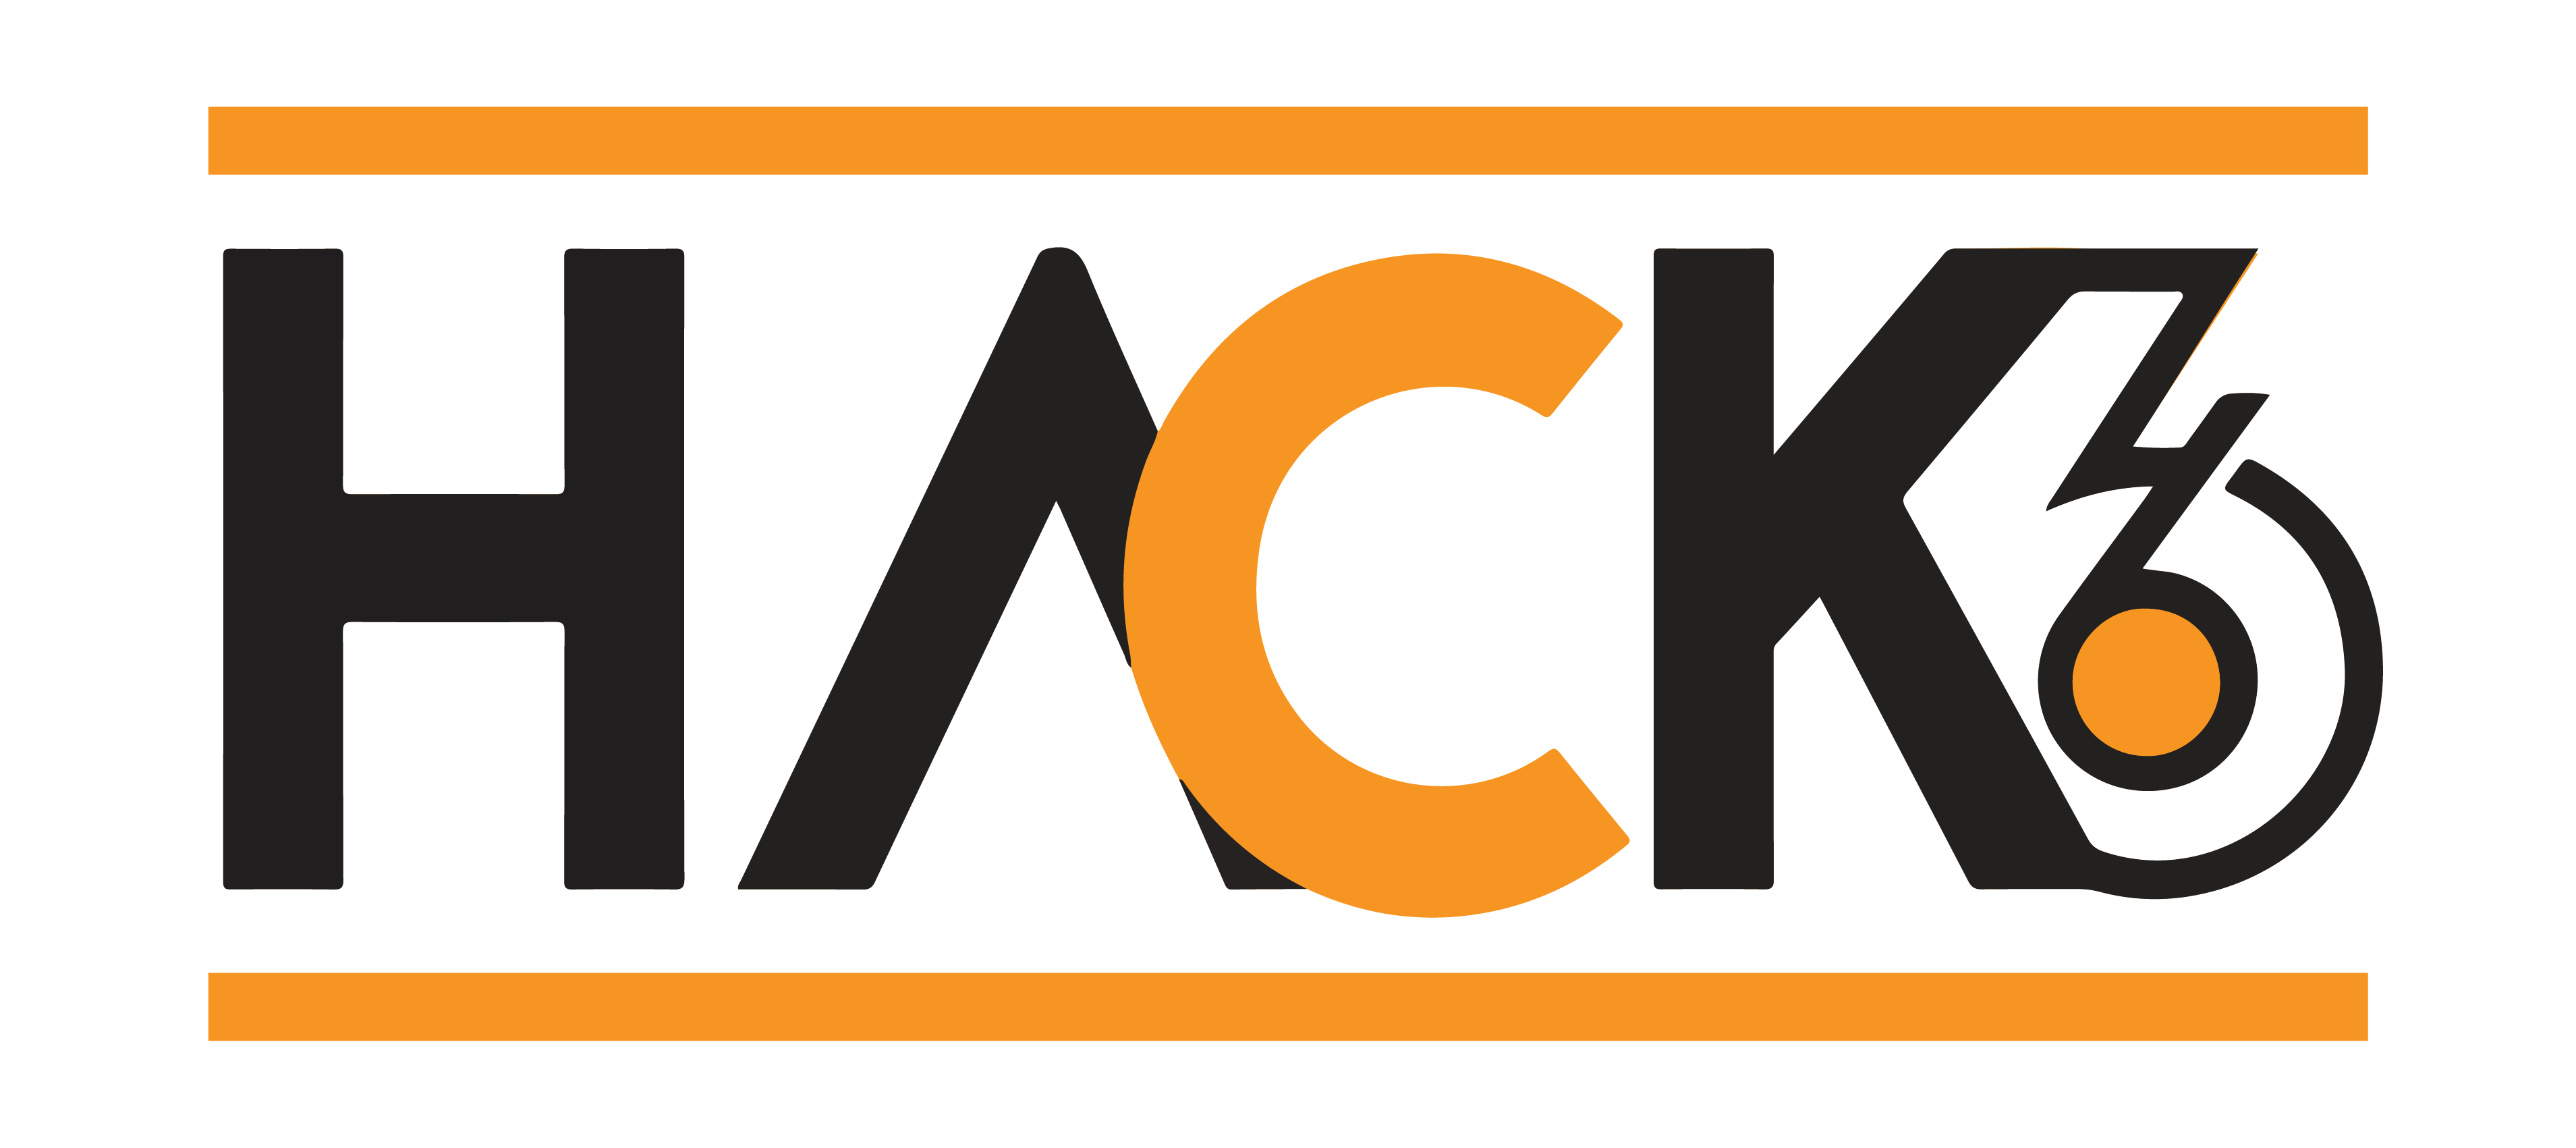 Hack Logo - Hack36